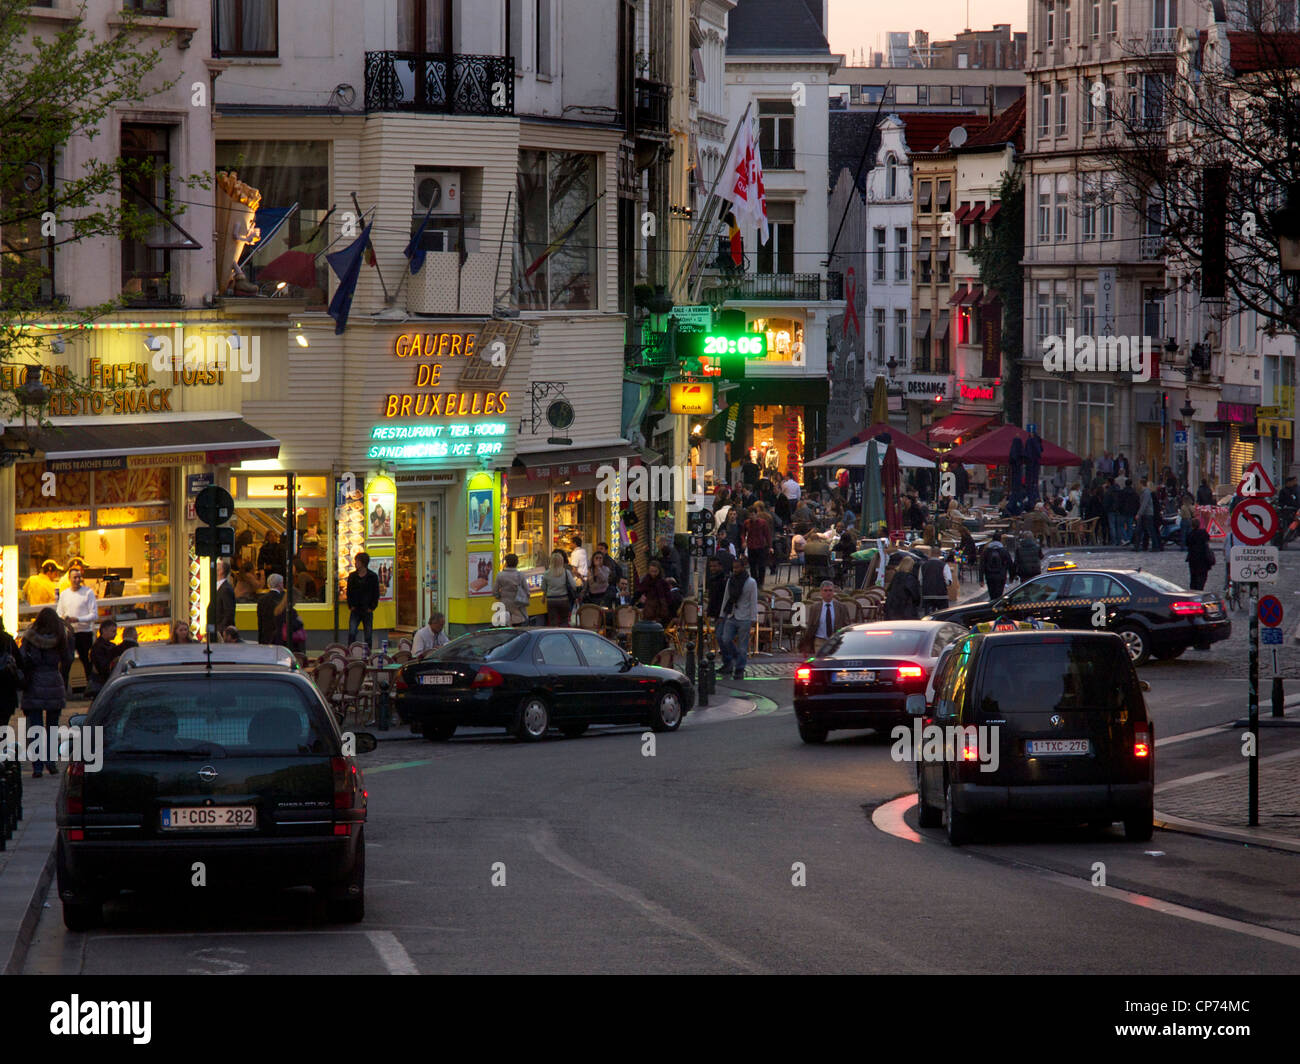 Tramonto nel centro di Bruxelles con molte persone, snackbars, e pochi taxi. Foto Stock